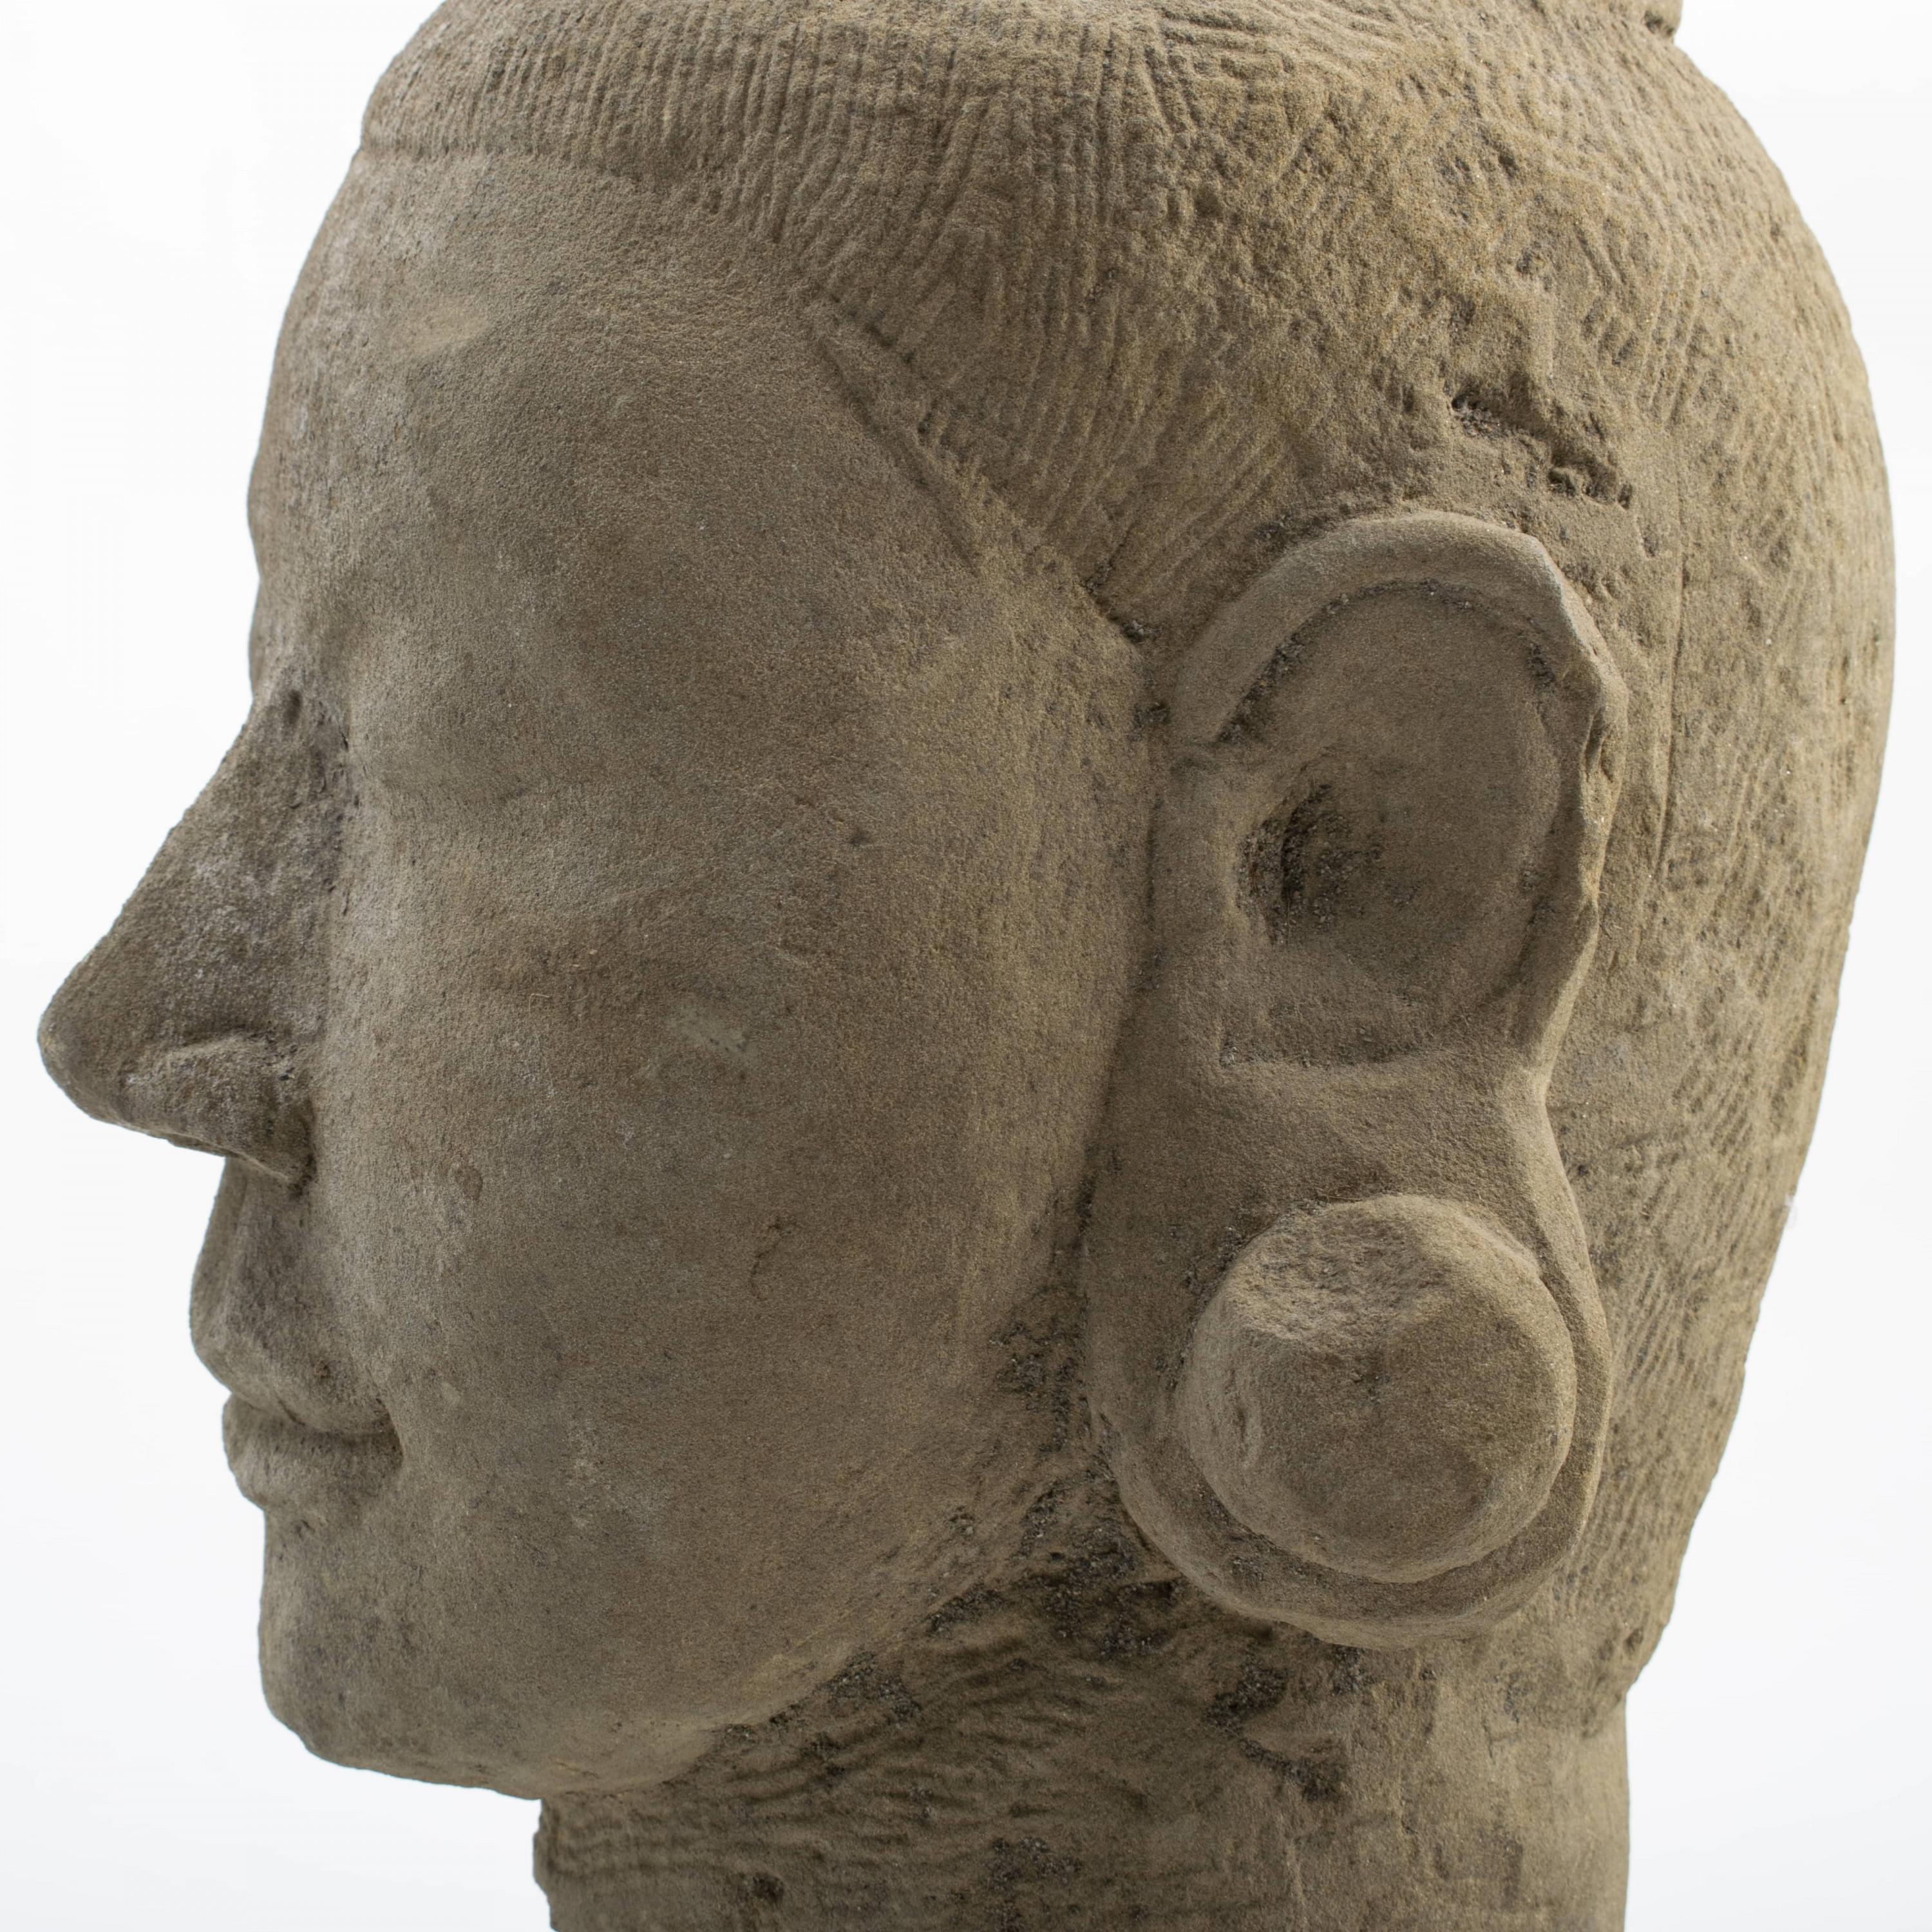 300-400 Years Old Burmese Sandstone Sculpture of Female Head 1